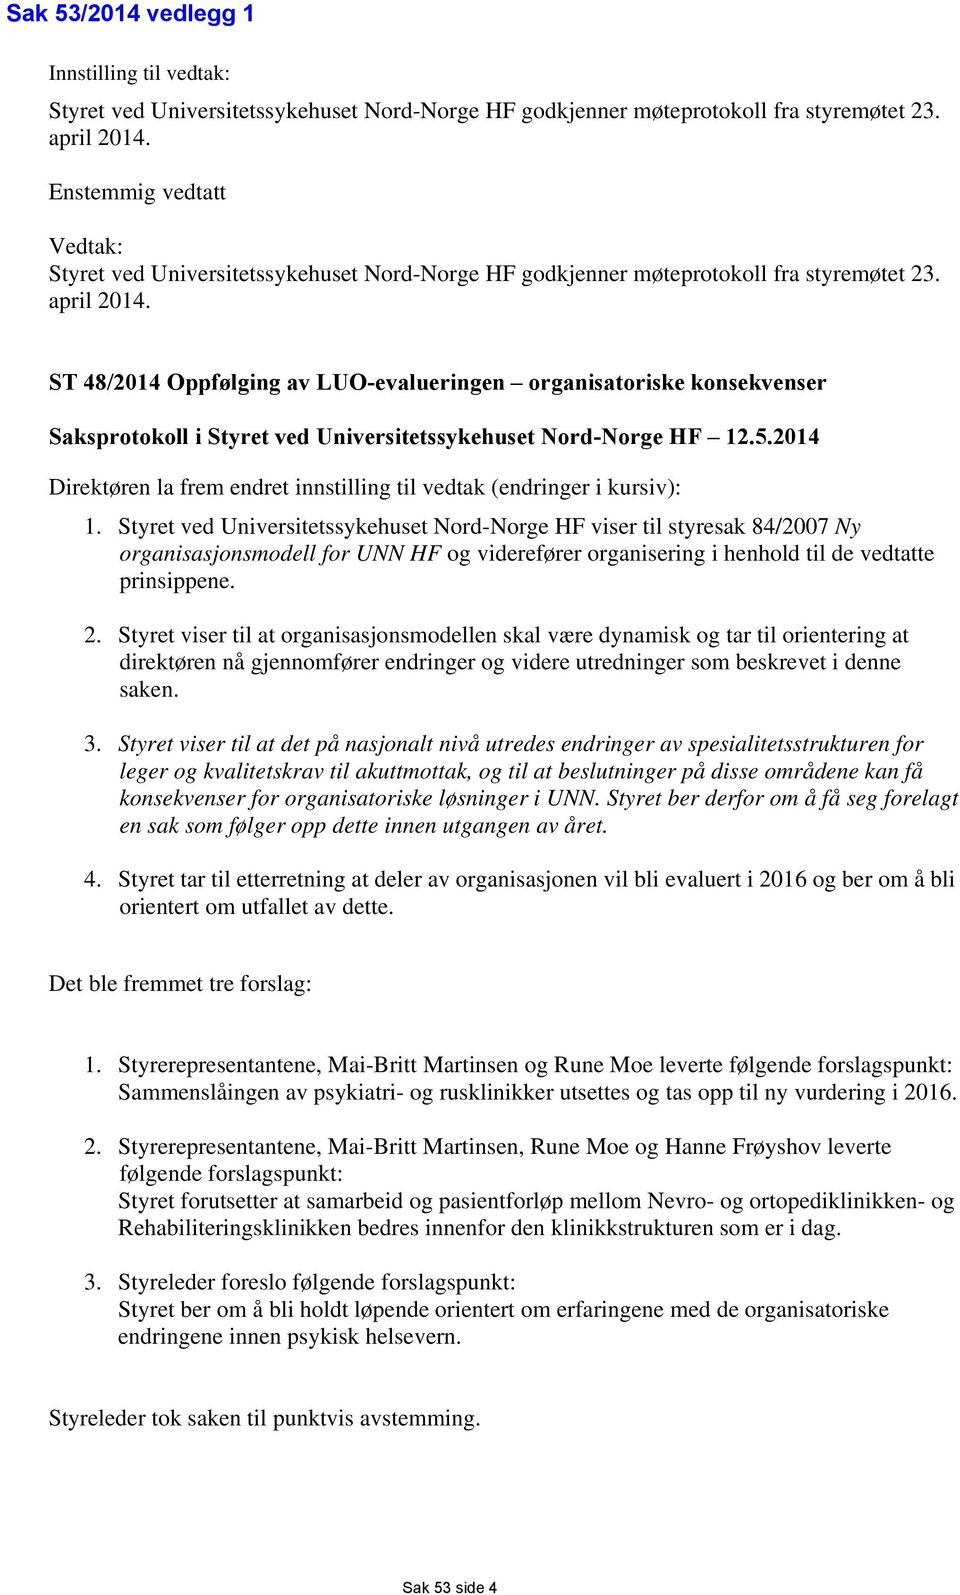 ST 48/2014 Oppfølging av LUO-evalueringen organisatoriske konsekvenser Saksprotokoll i Styret ved Universitetssykehuset Nord-Norge HF 12.5.